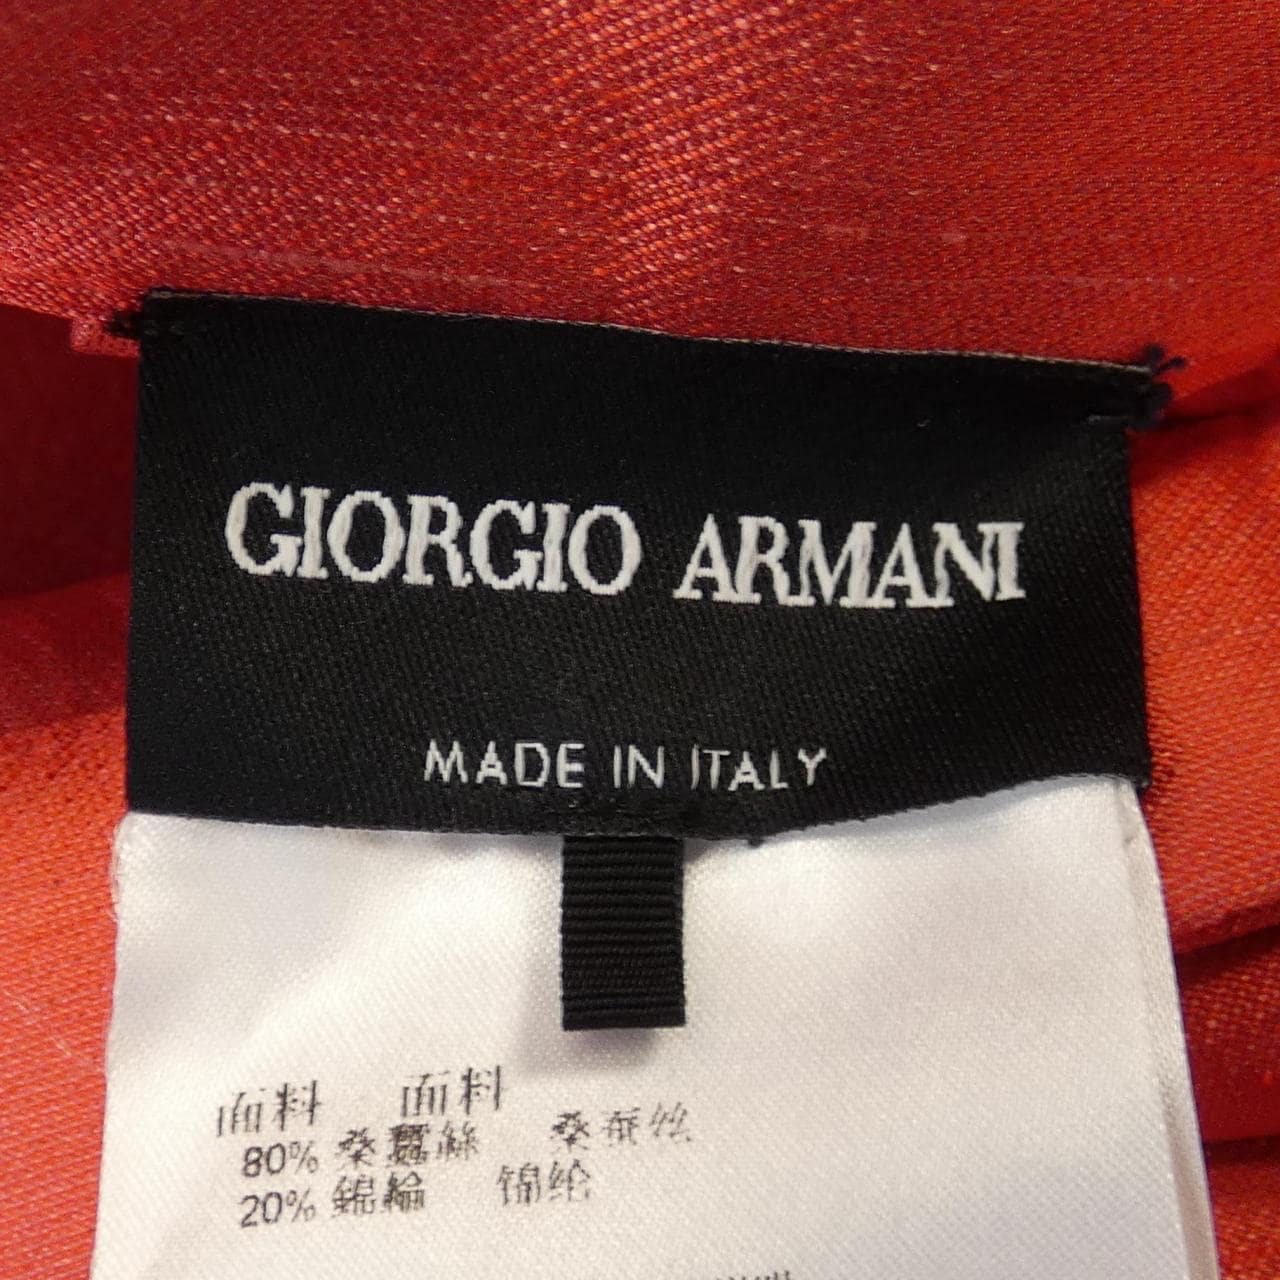 Giorgio Armani GIORGIO ARMANI Skirt